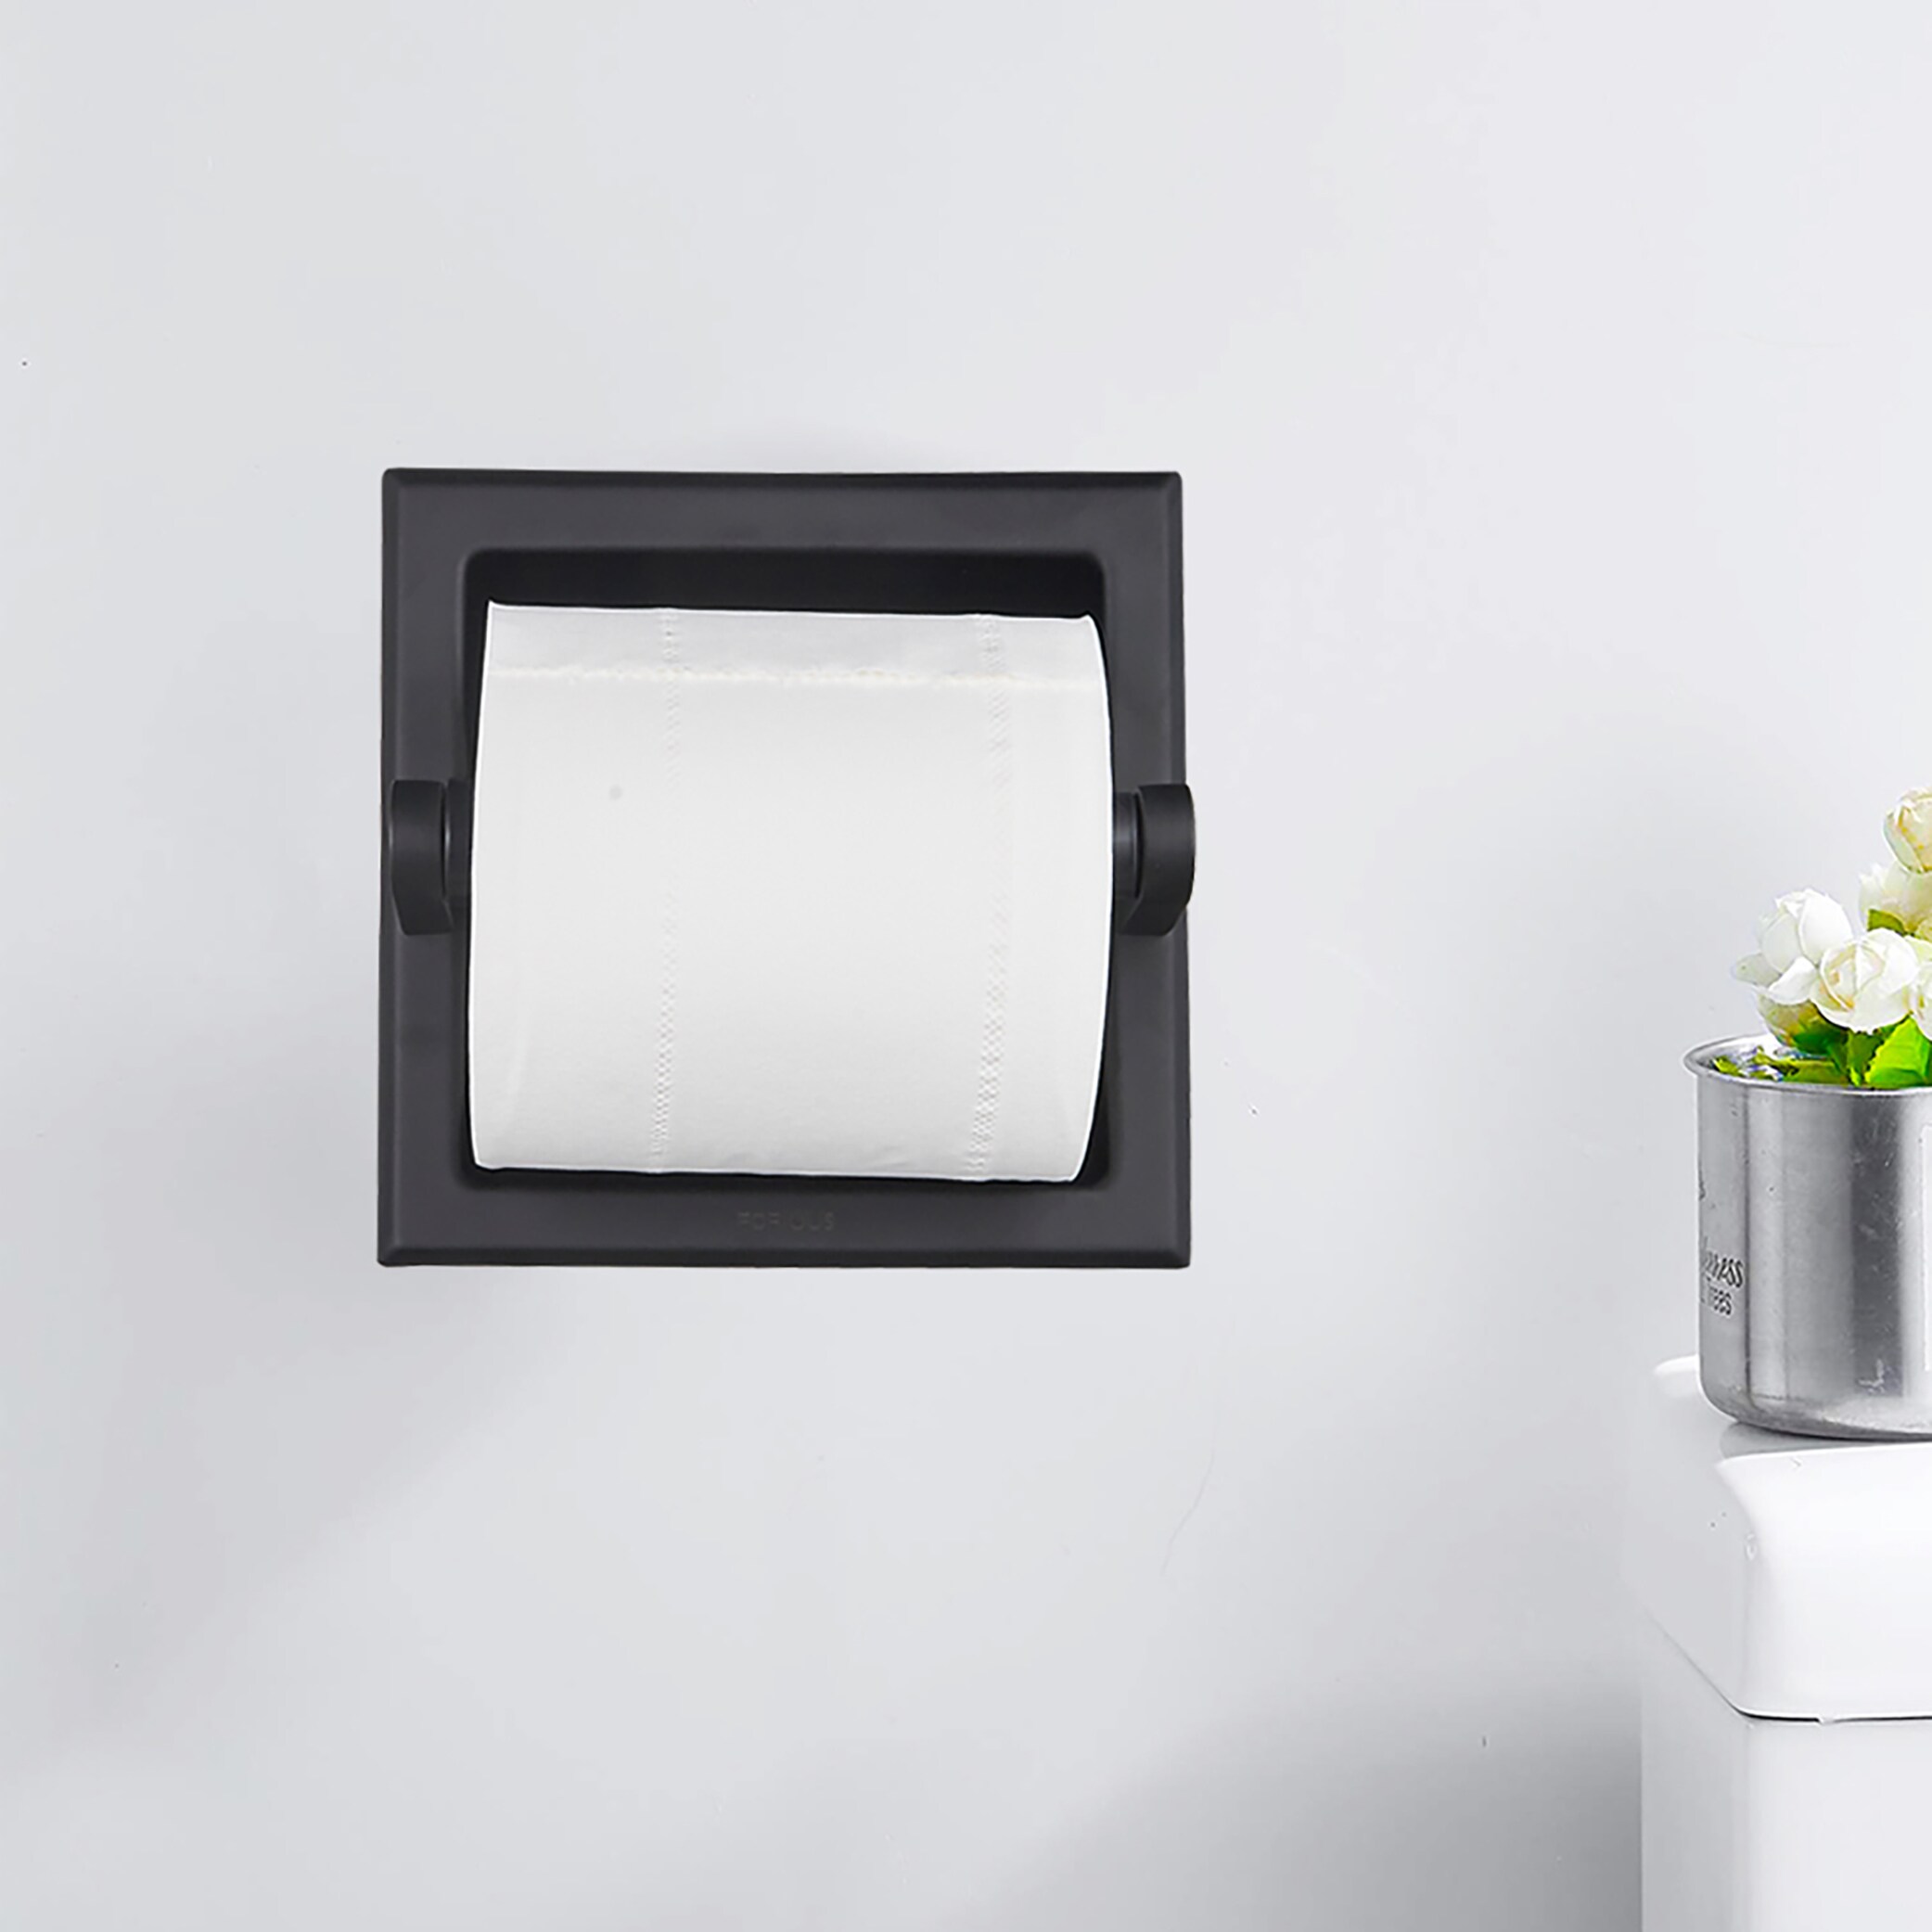 Black Ceramic Recessed Toilet Paper Holder - 6 1/2 x 6 1/2 x 3 1/4